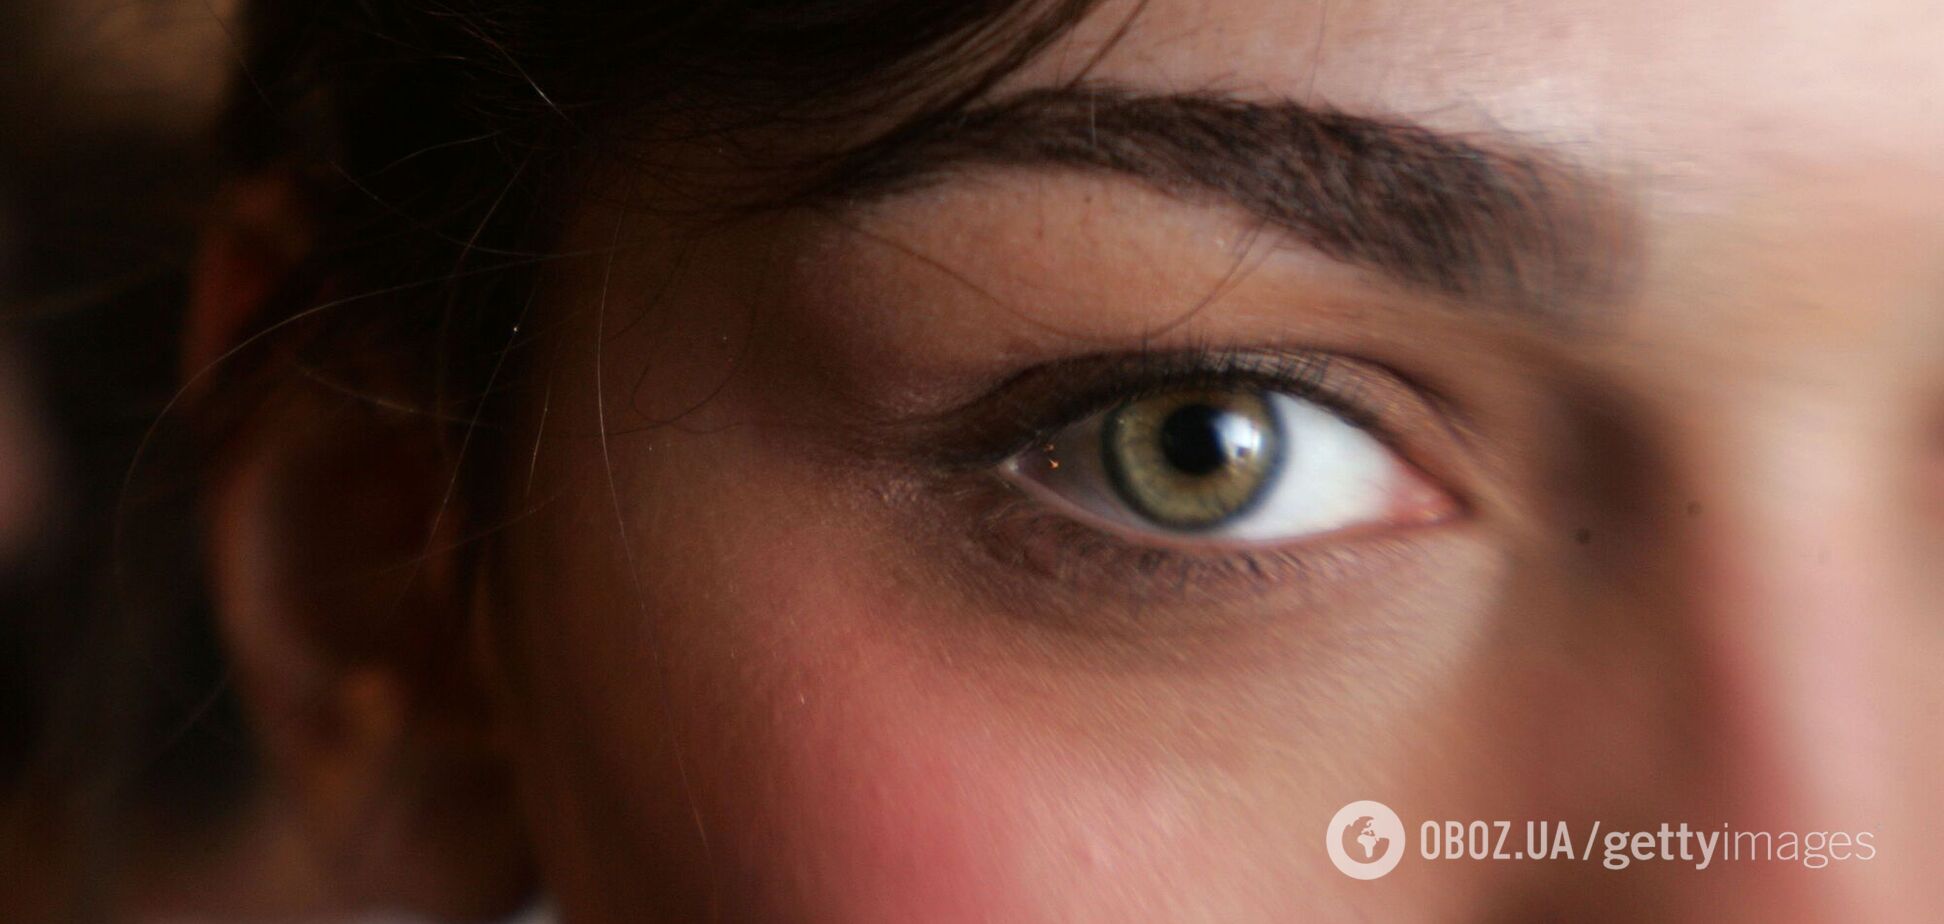 Коронавирус может вызывать поражение нервов роговицы глаза, – исследование